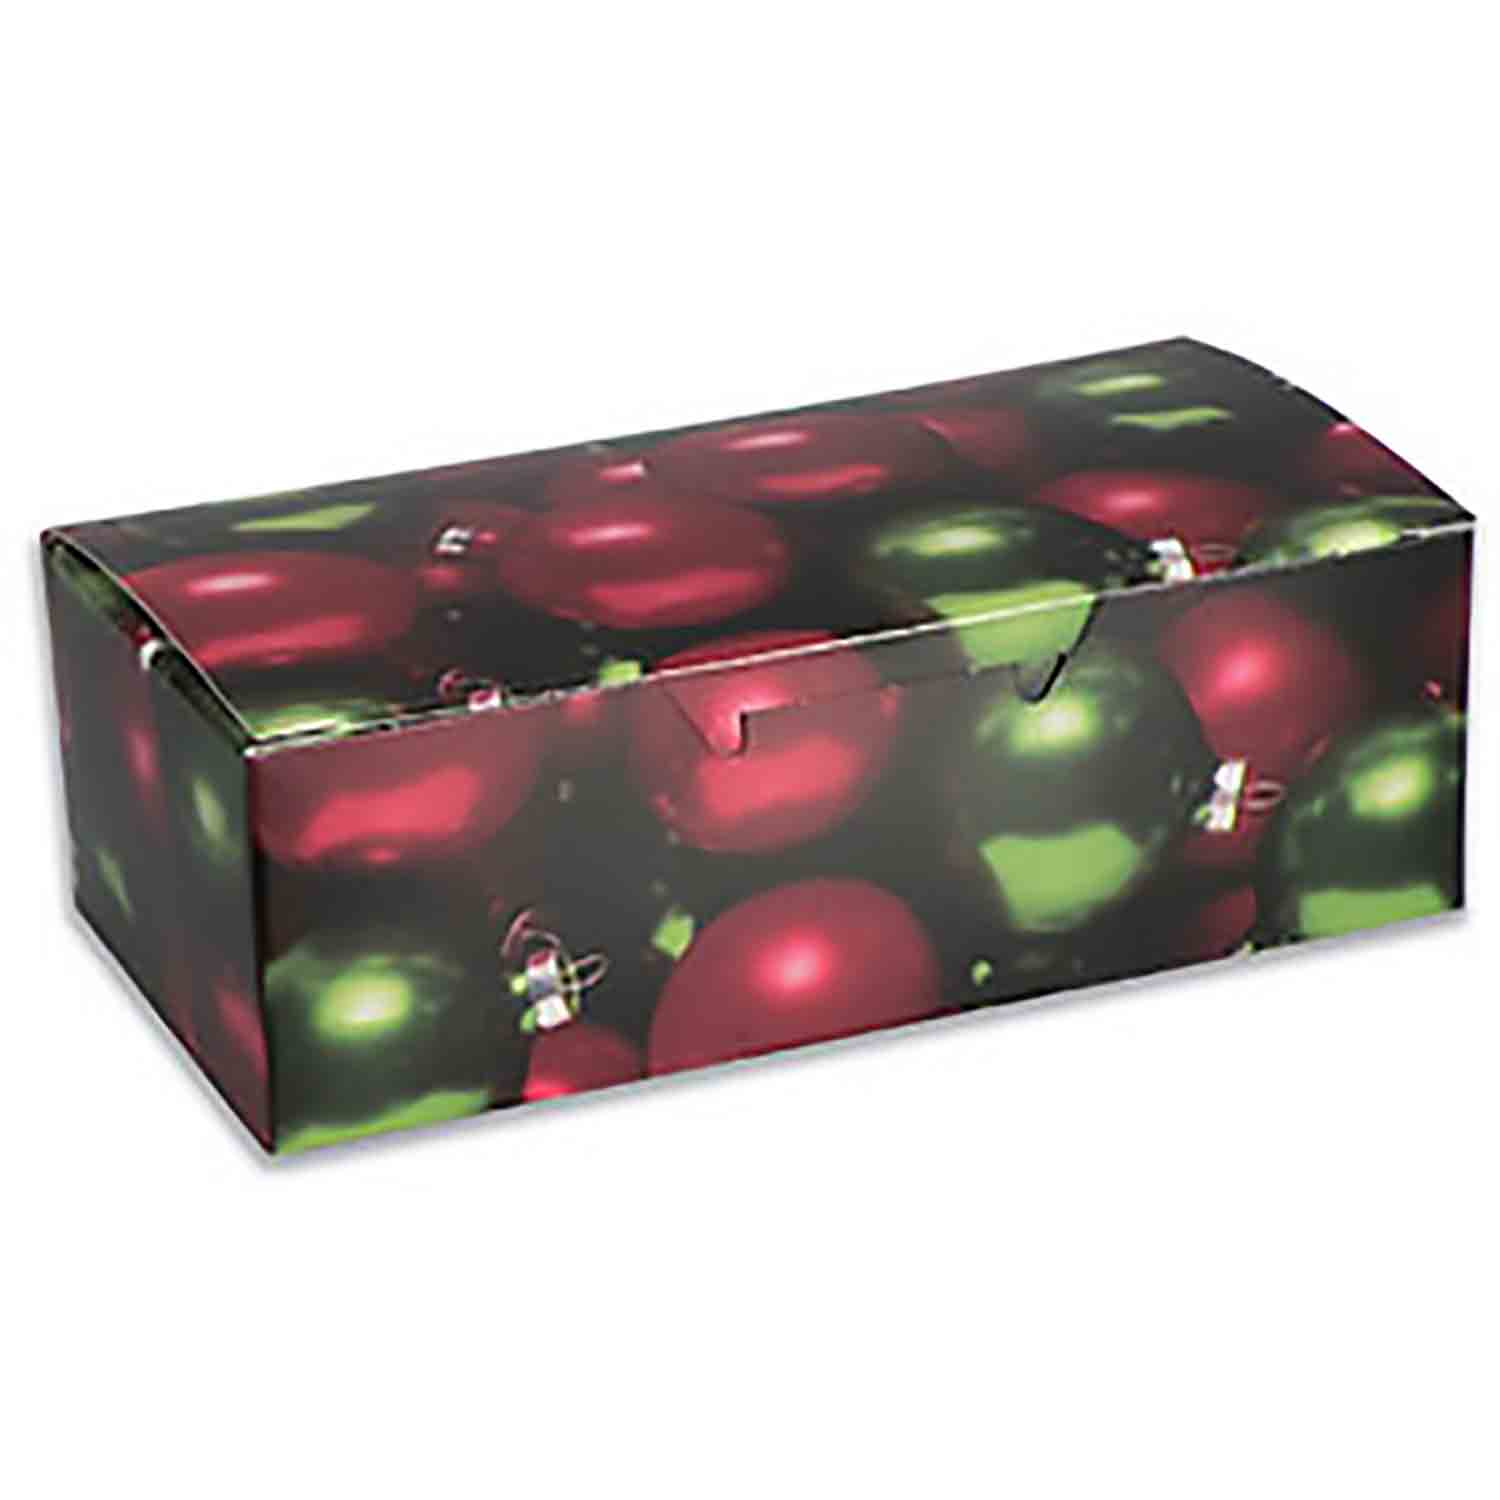 1 lb Ornament Candy Box - 1pc